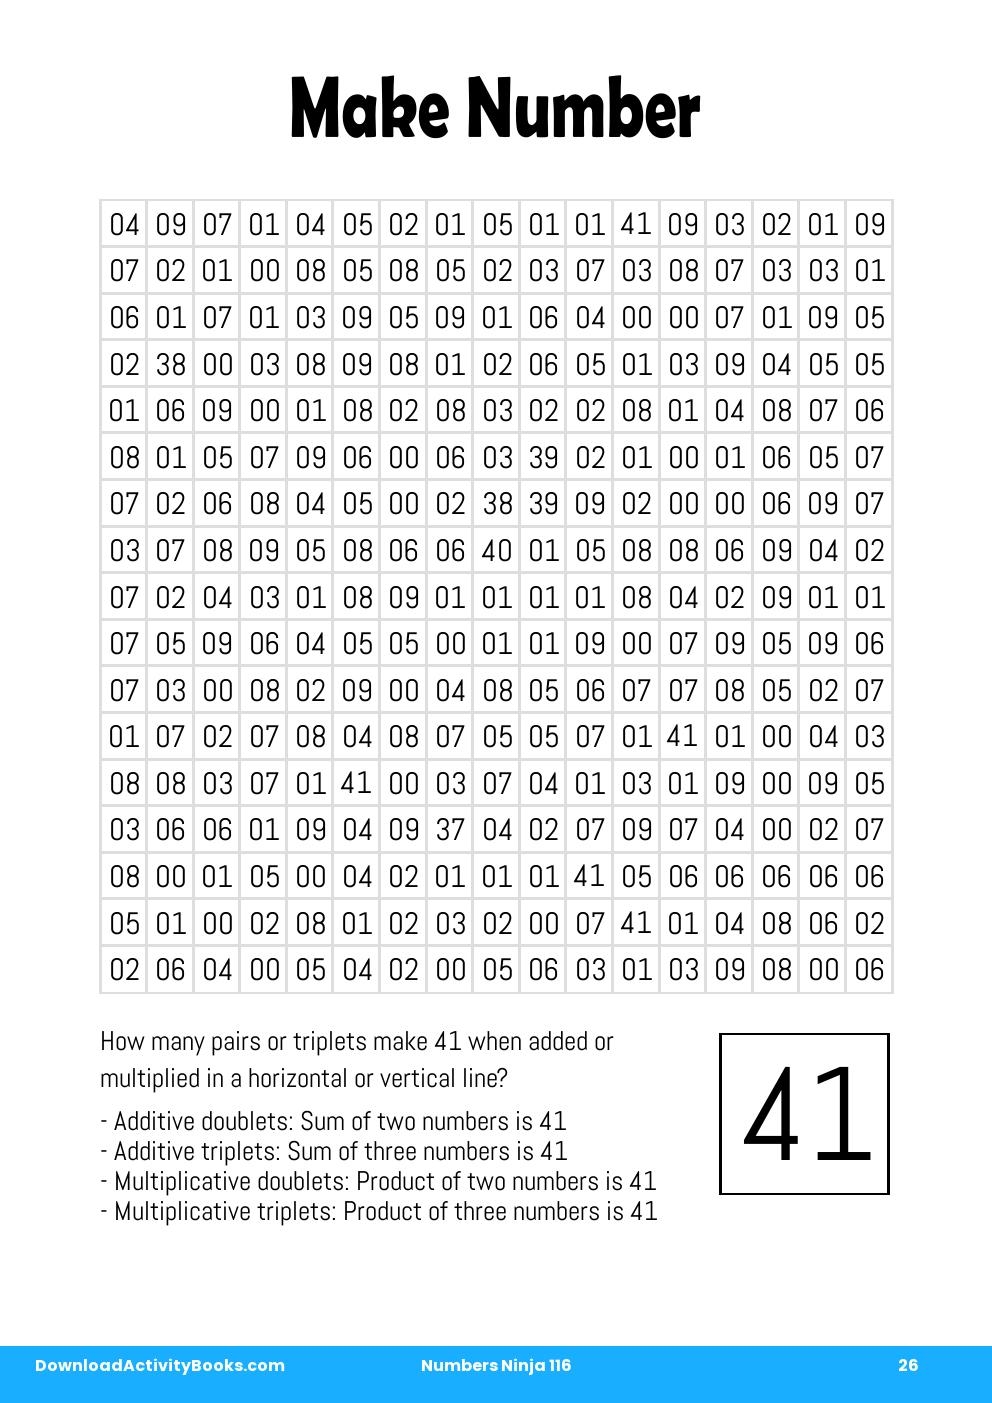 Make Number in Numbers Ninja 116